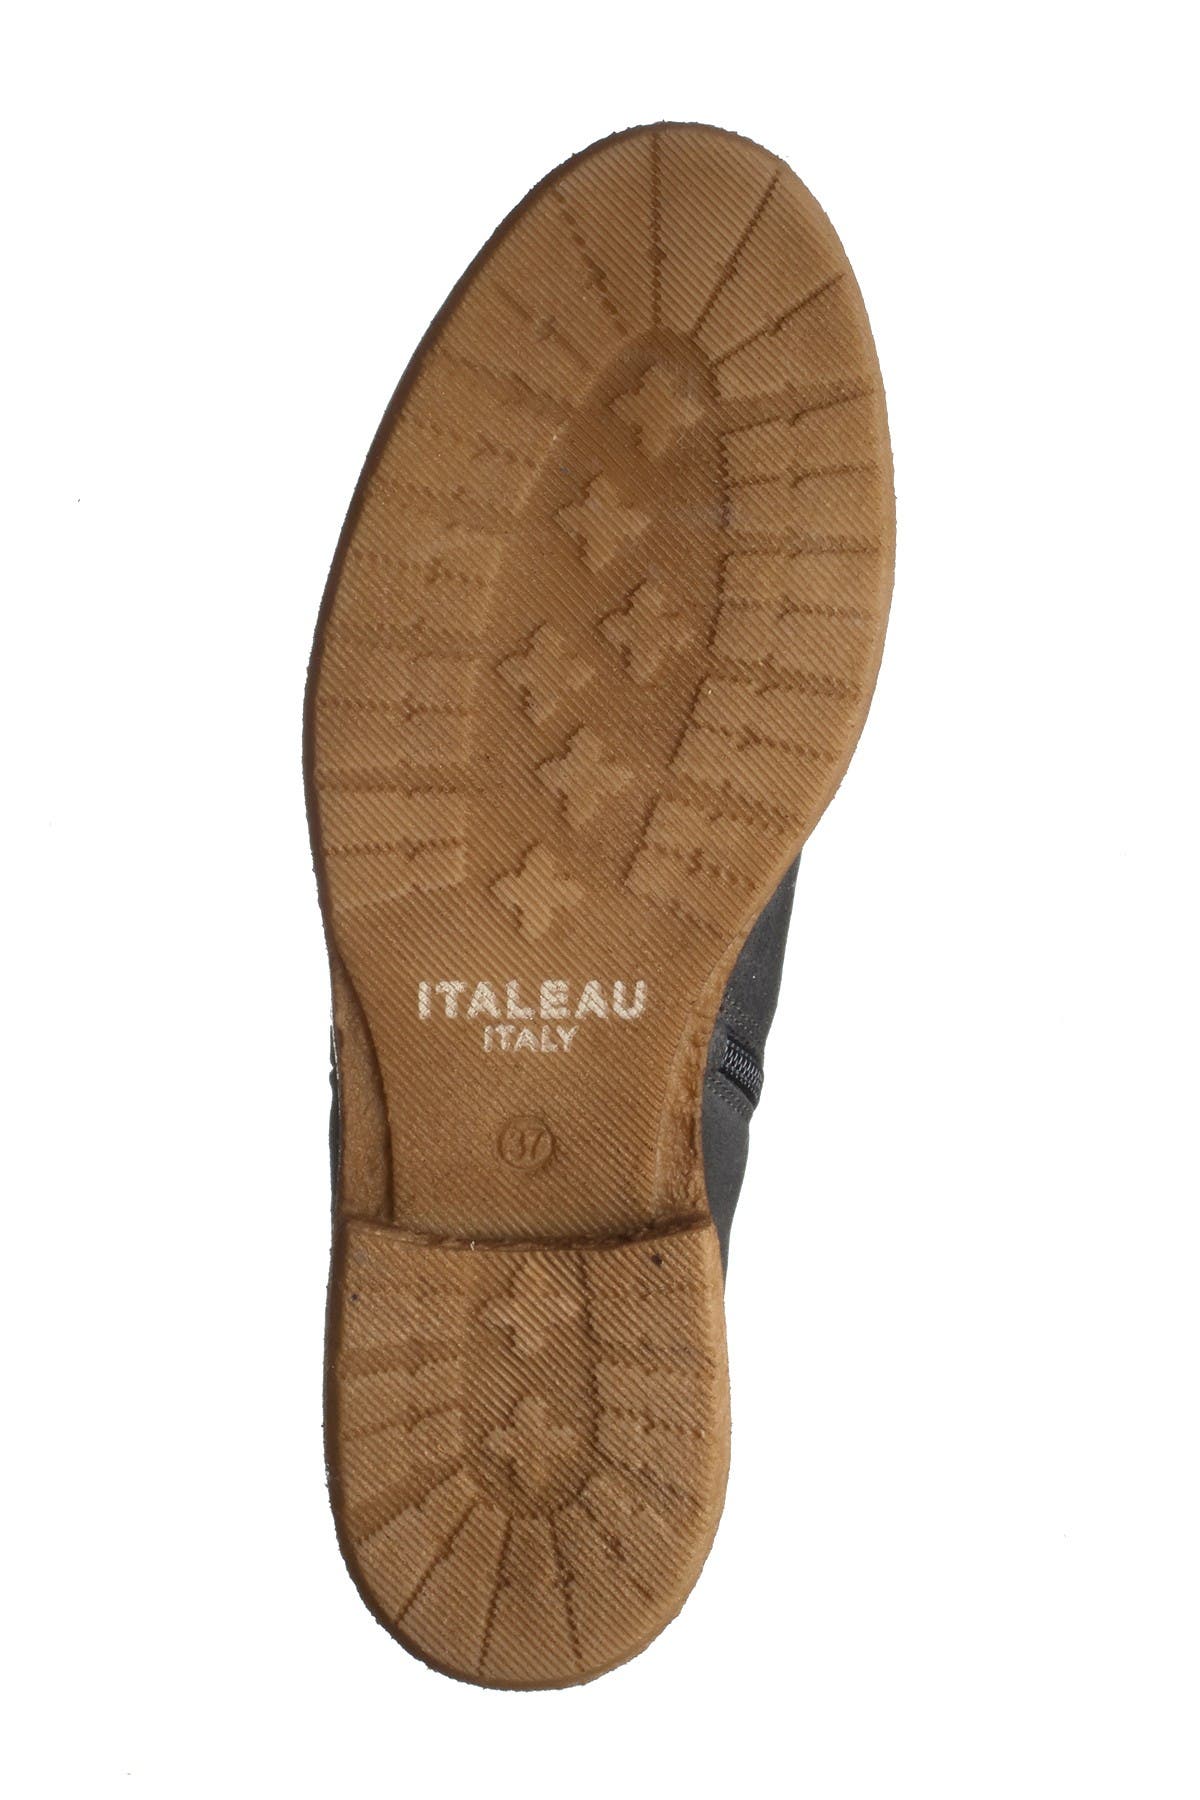 italeau waterproof boots